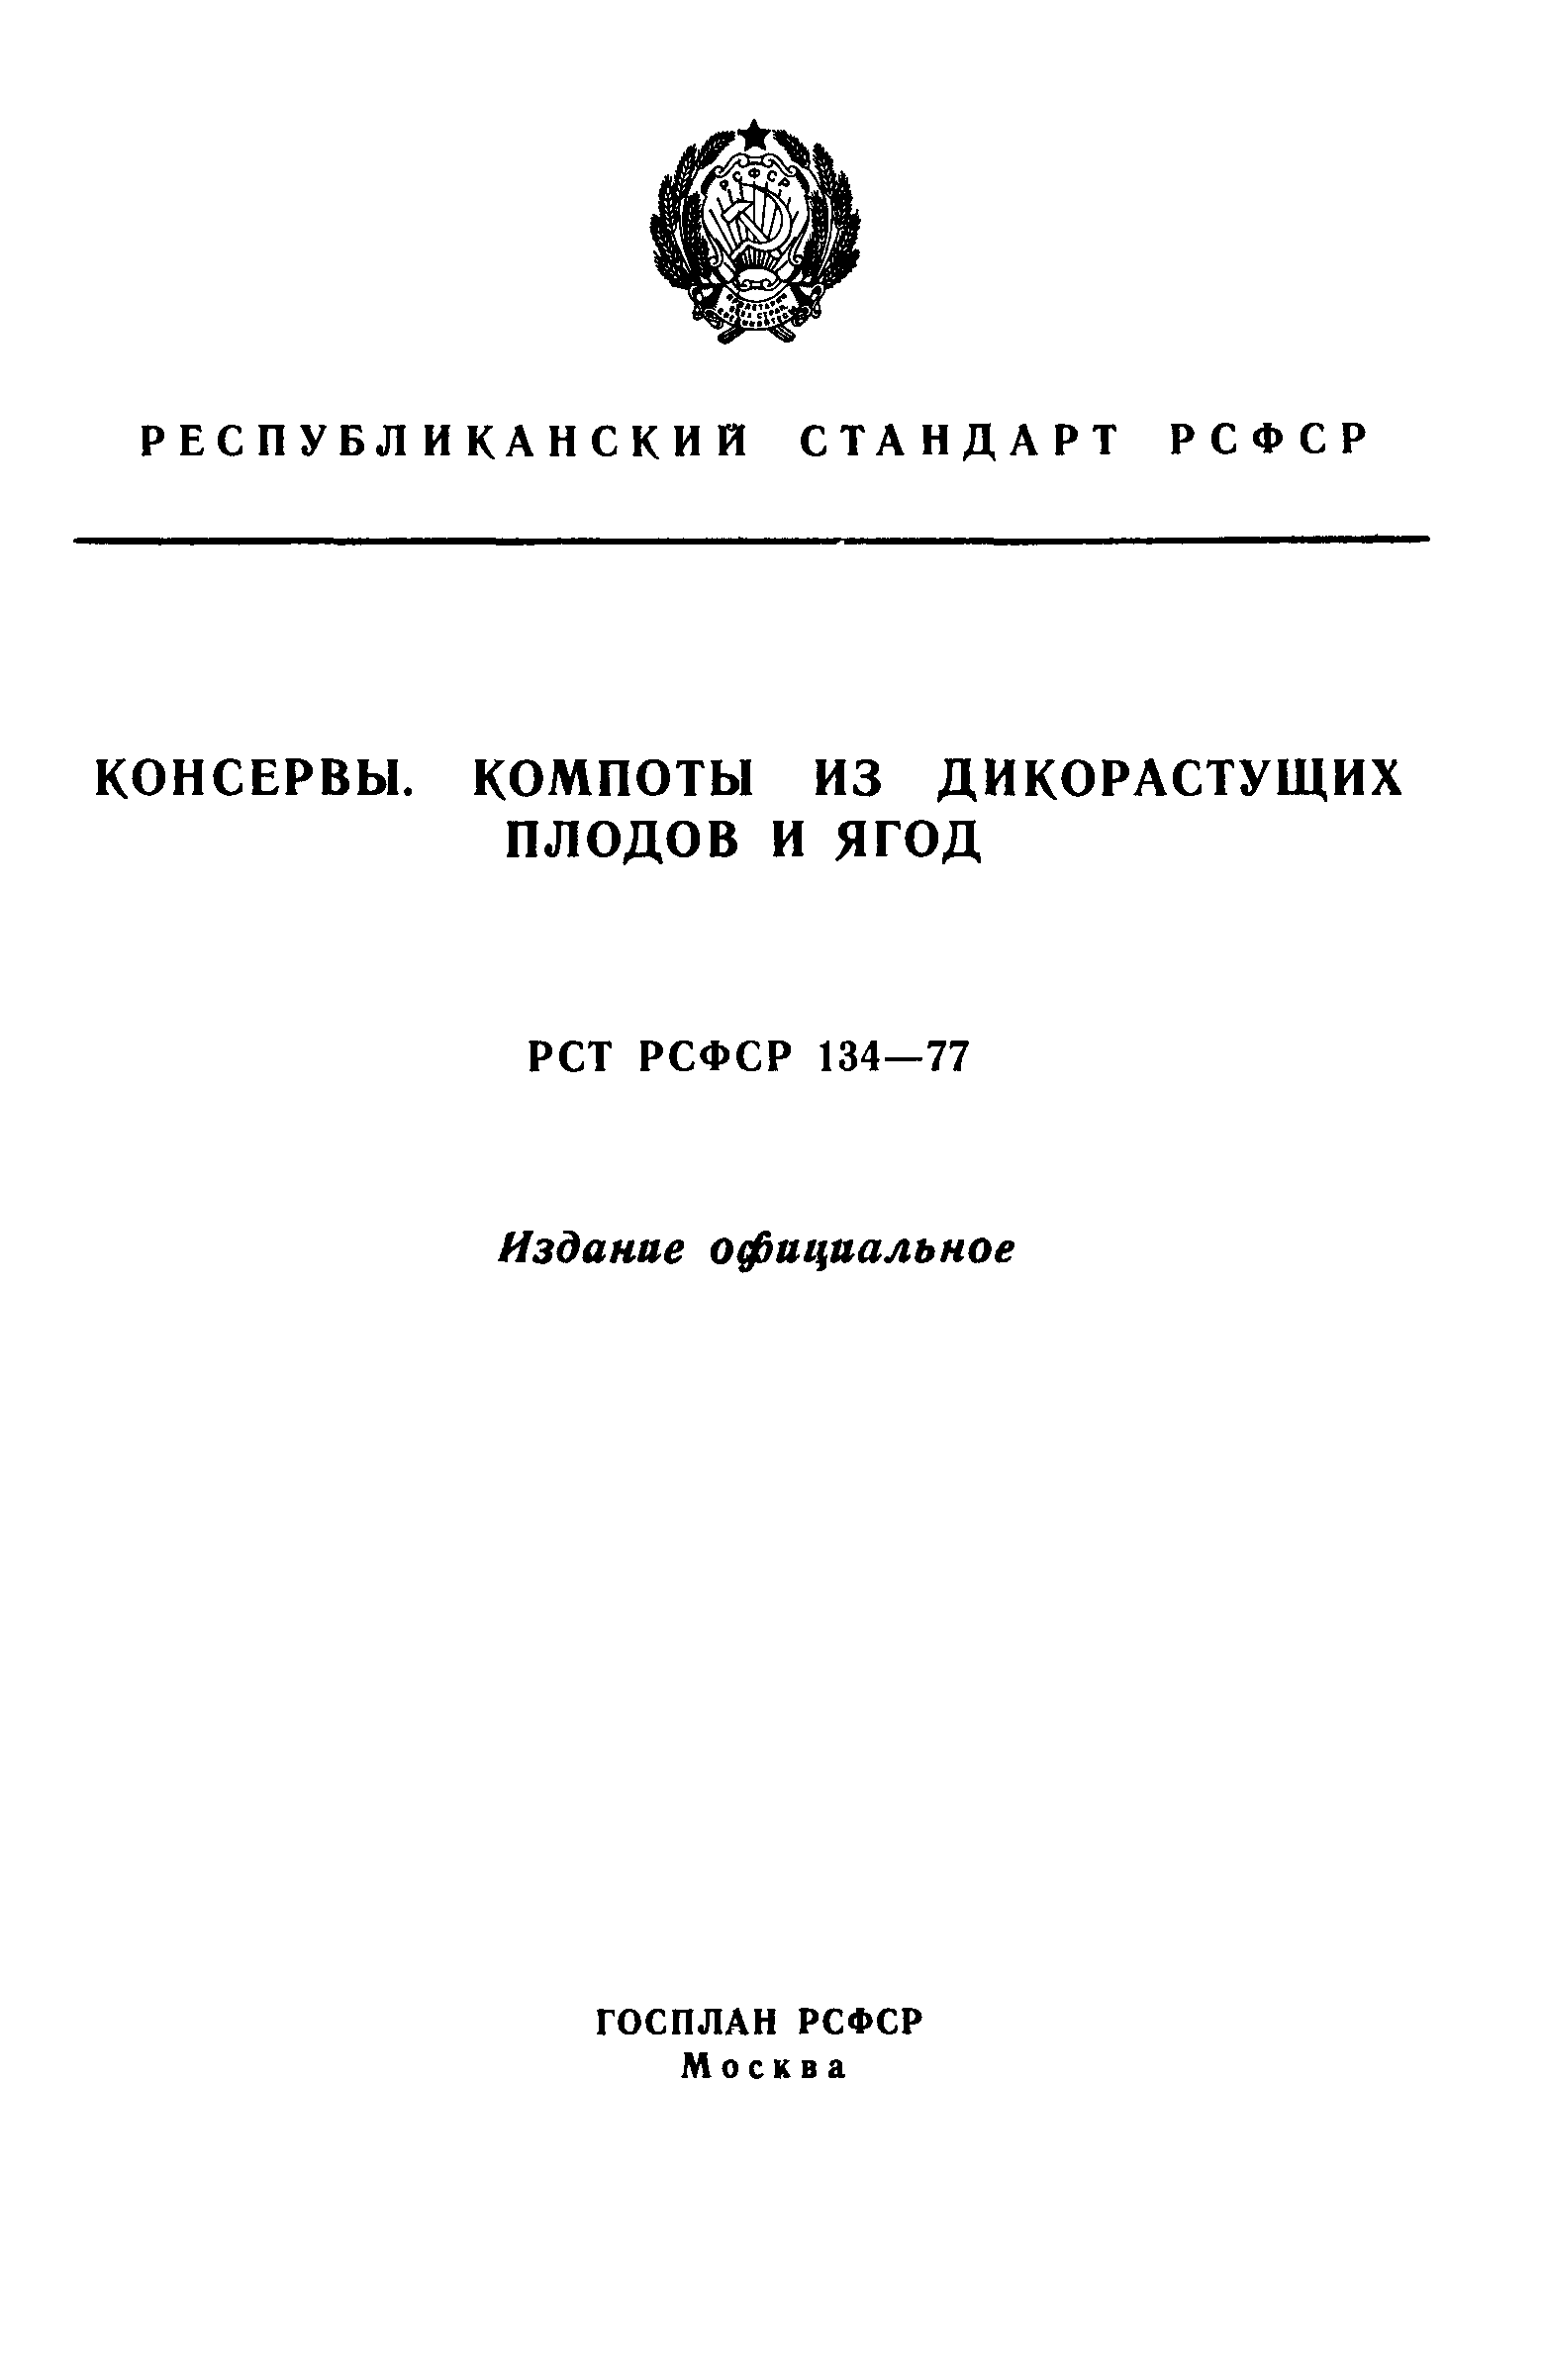 РСТ РСФСР 134-77